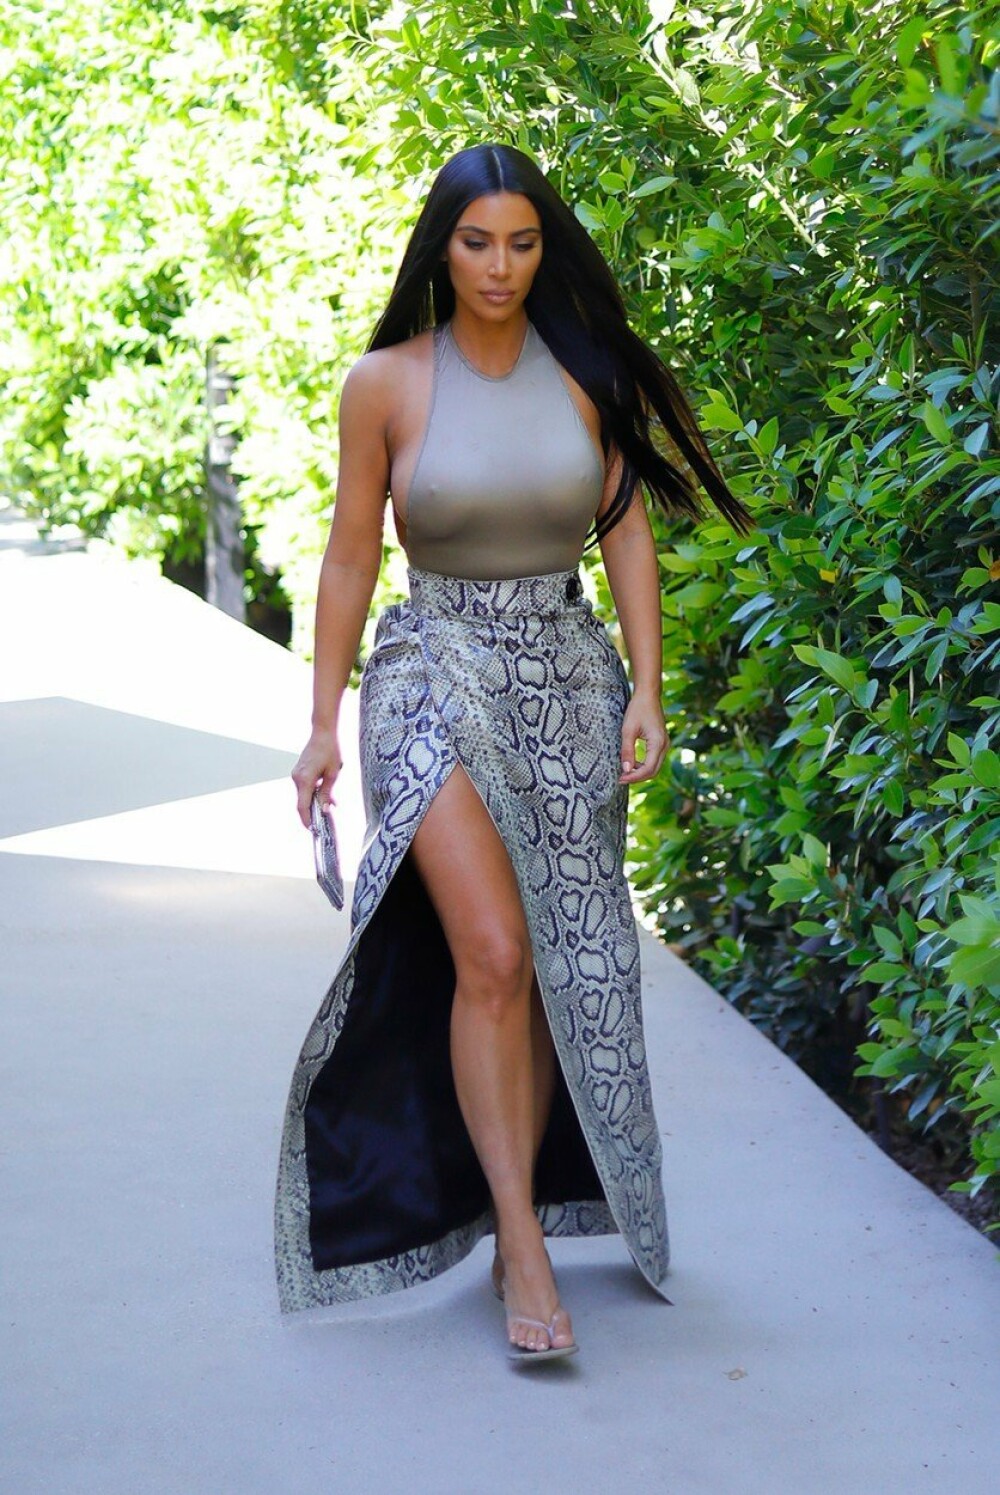 Kim Kardashian, surprinsă în aceeași ținută provocatoare, de două ori într-o săptămână. FOTO - Imaginea 3